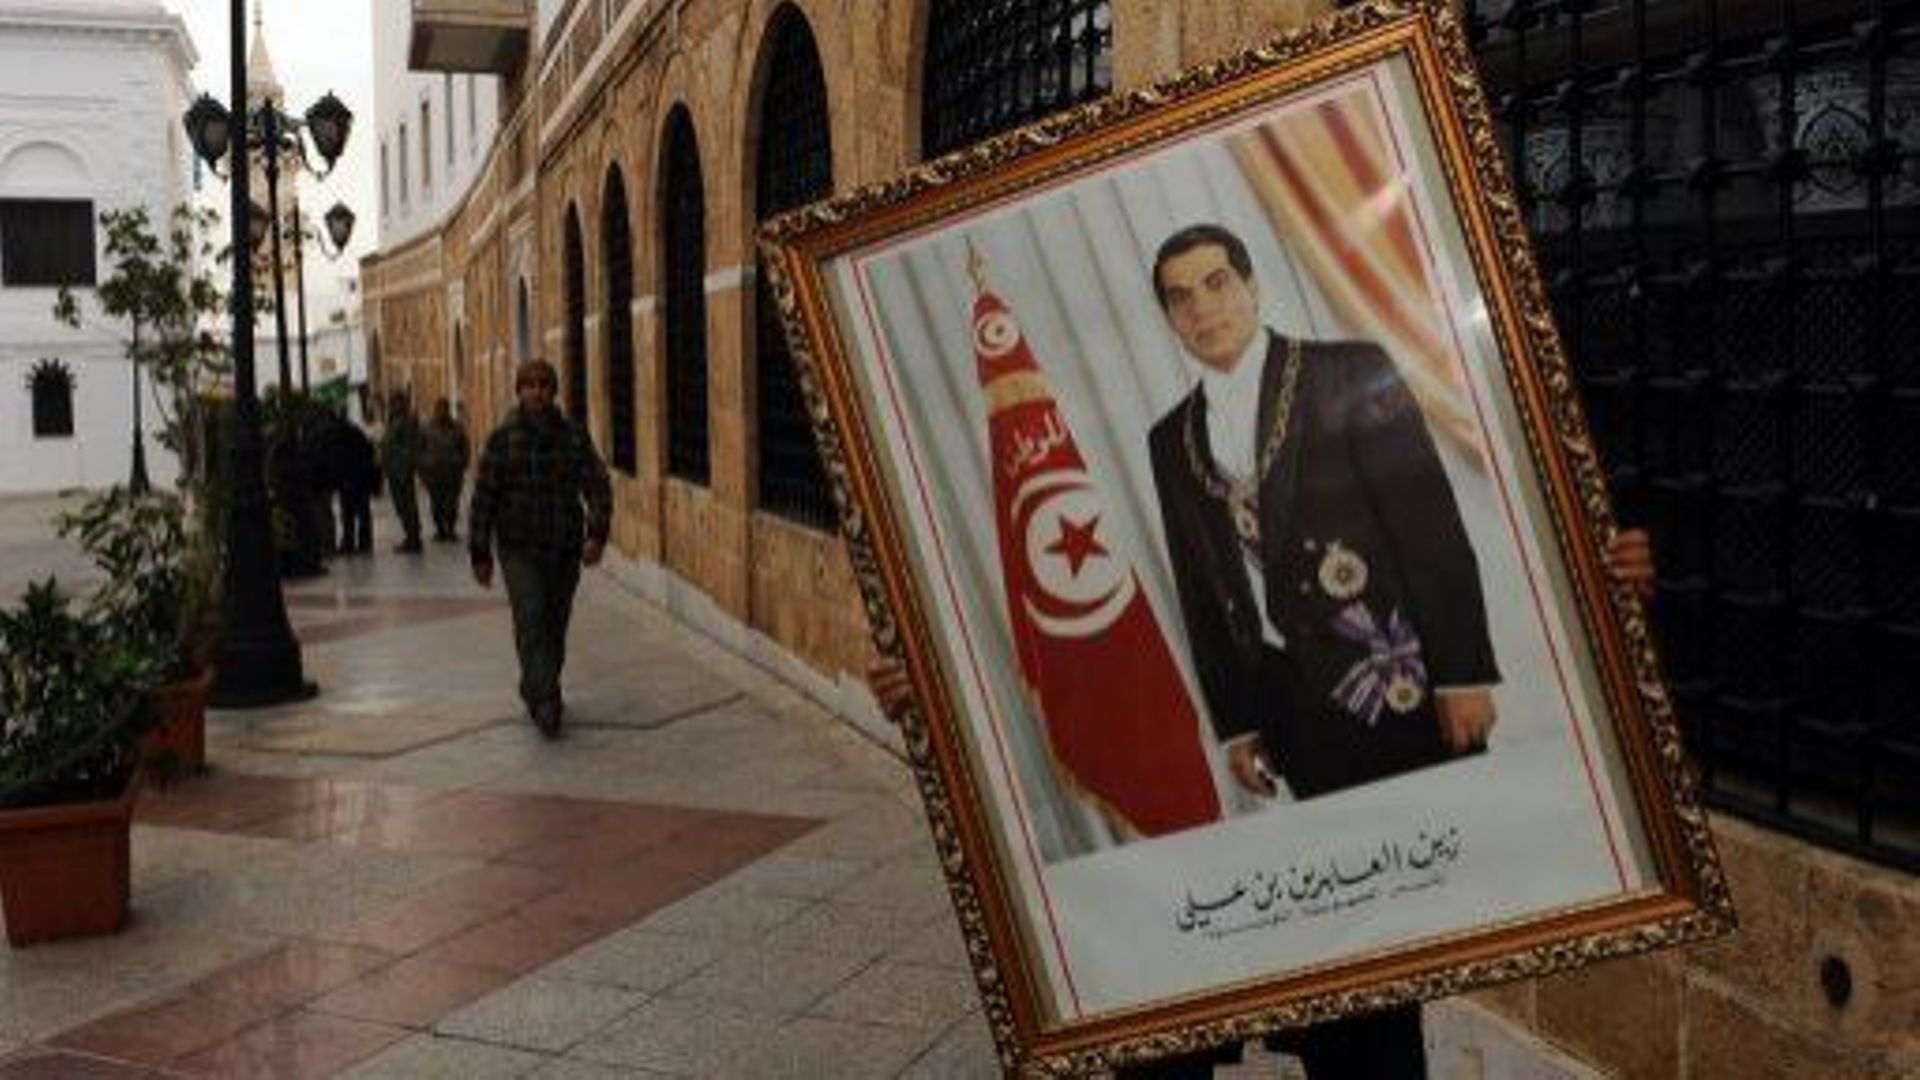 Révolte arabe: les présidents écartés, les monarques restent